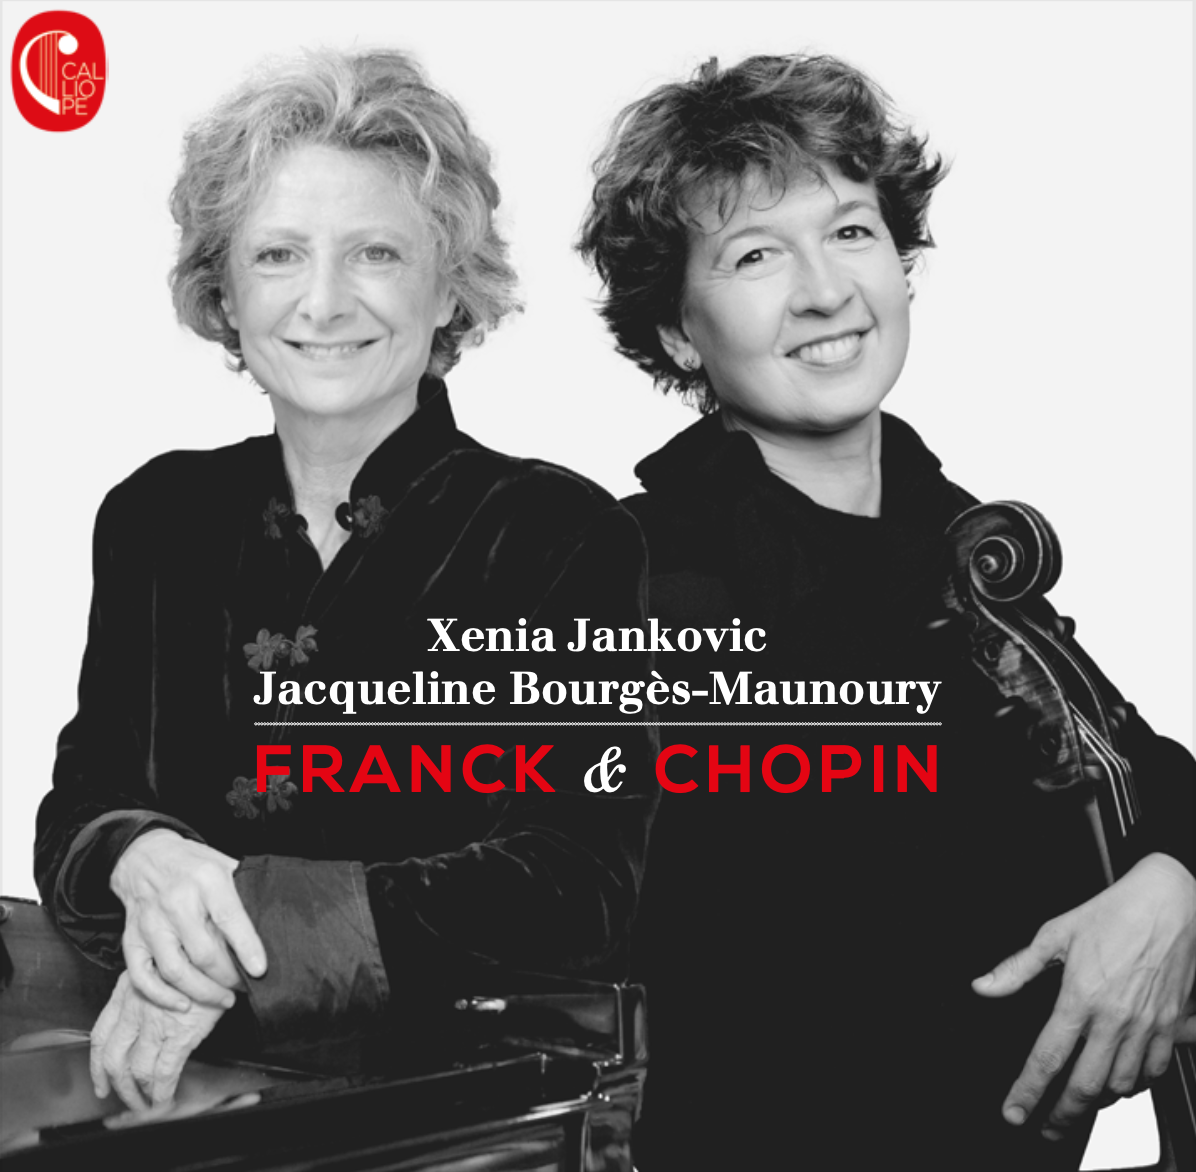 Franck and Chopin CD recording